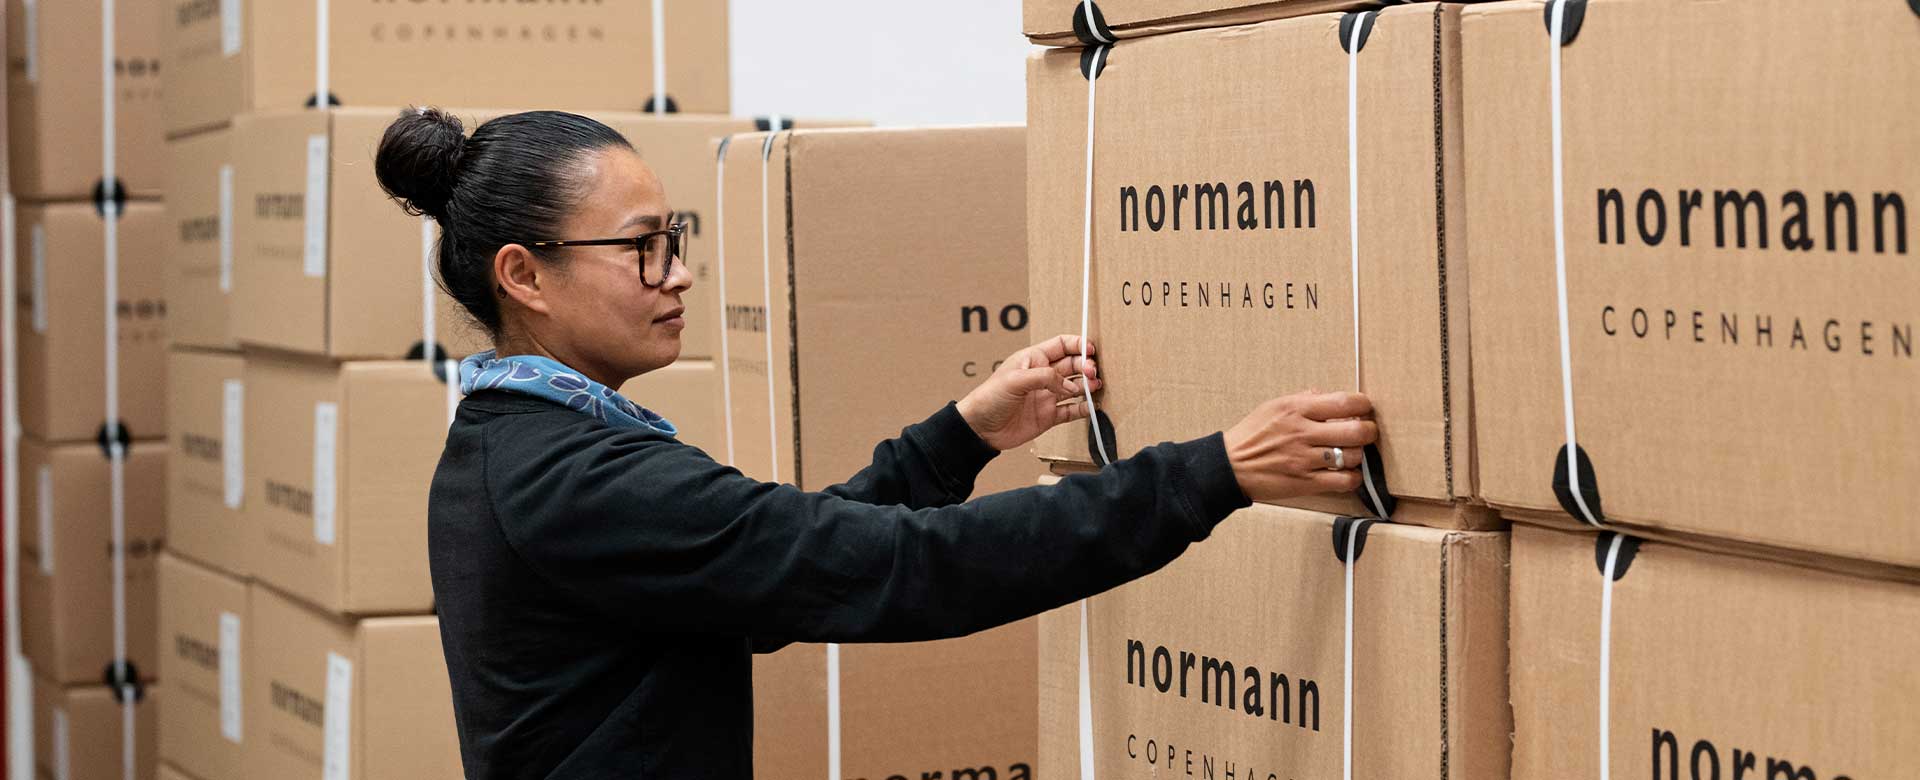 Kvinde på Normann lager flytter en papkasse